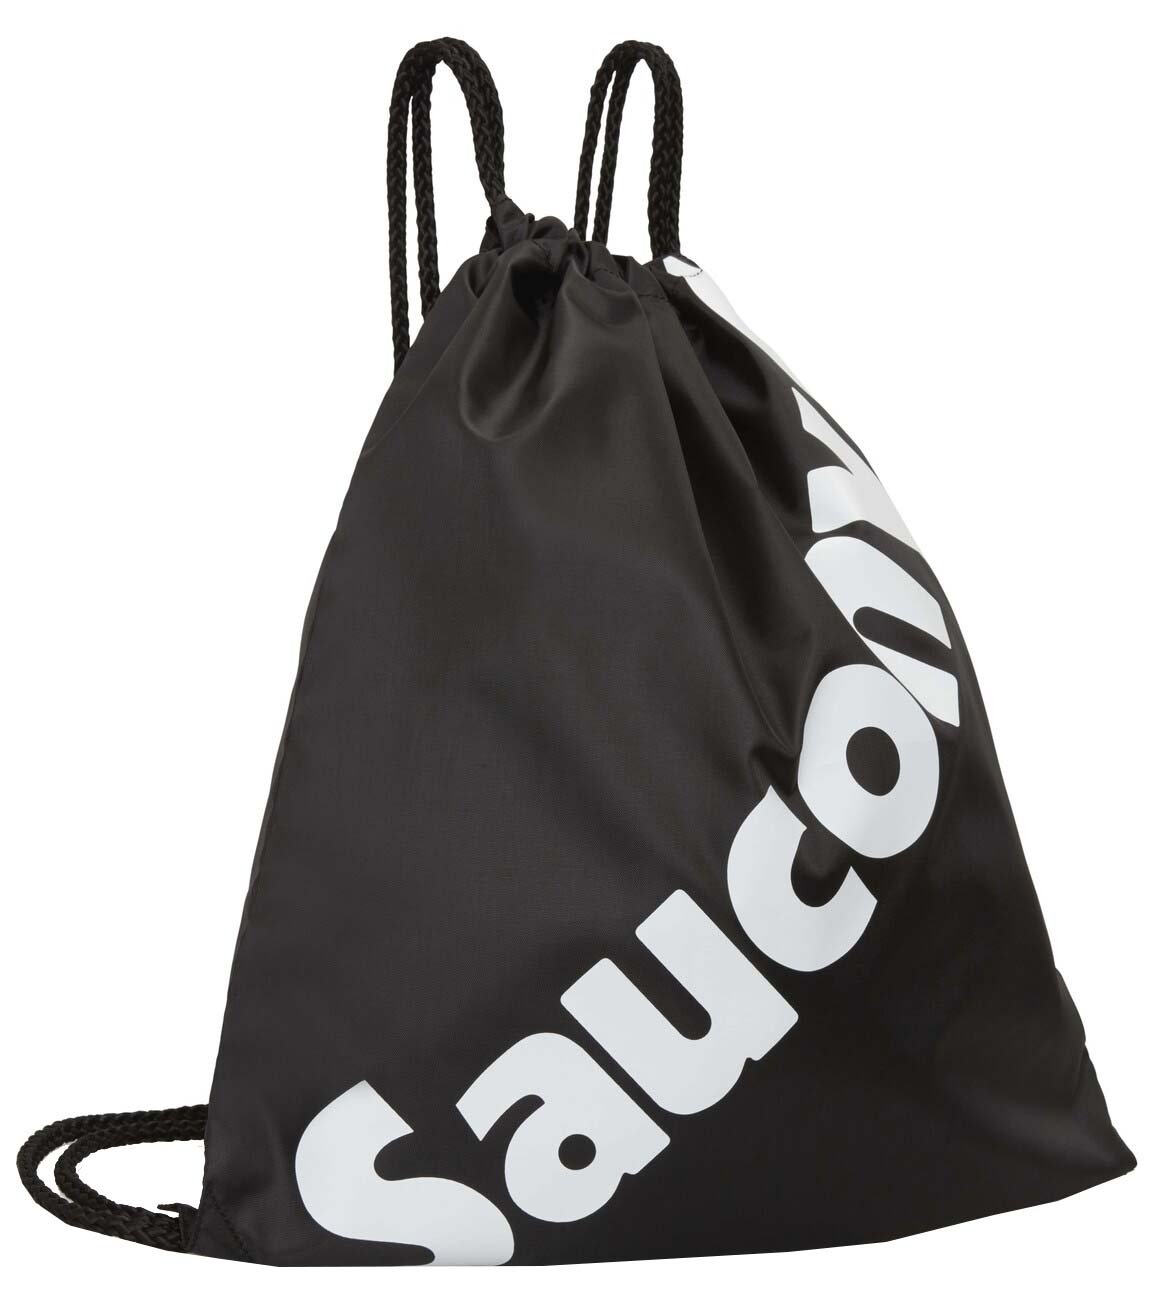 Рюкзак Saucony String Bag, Black, 2021, SAU900016_BK дисплей с велофонарями bbb spark 2 0 передний фонарь black 2021 bls 151d